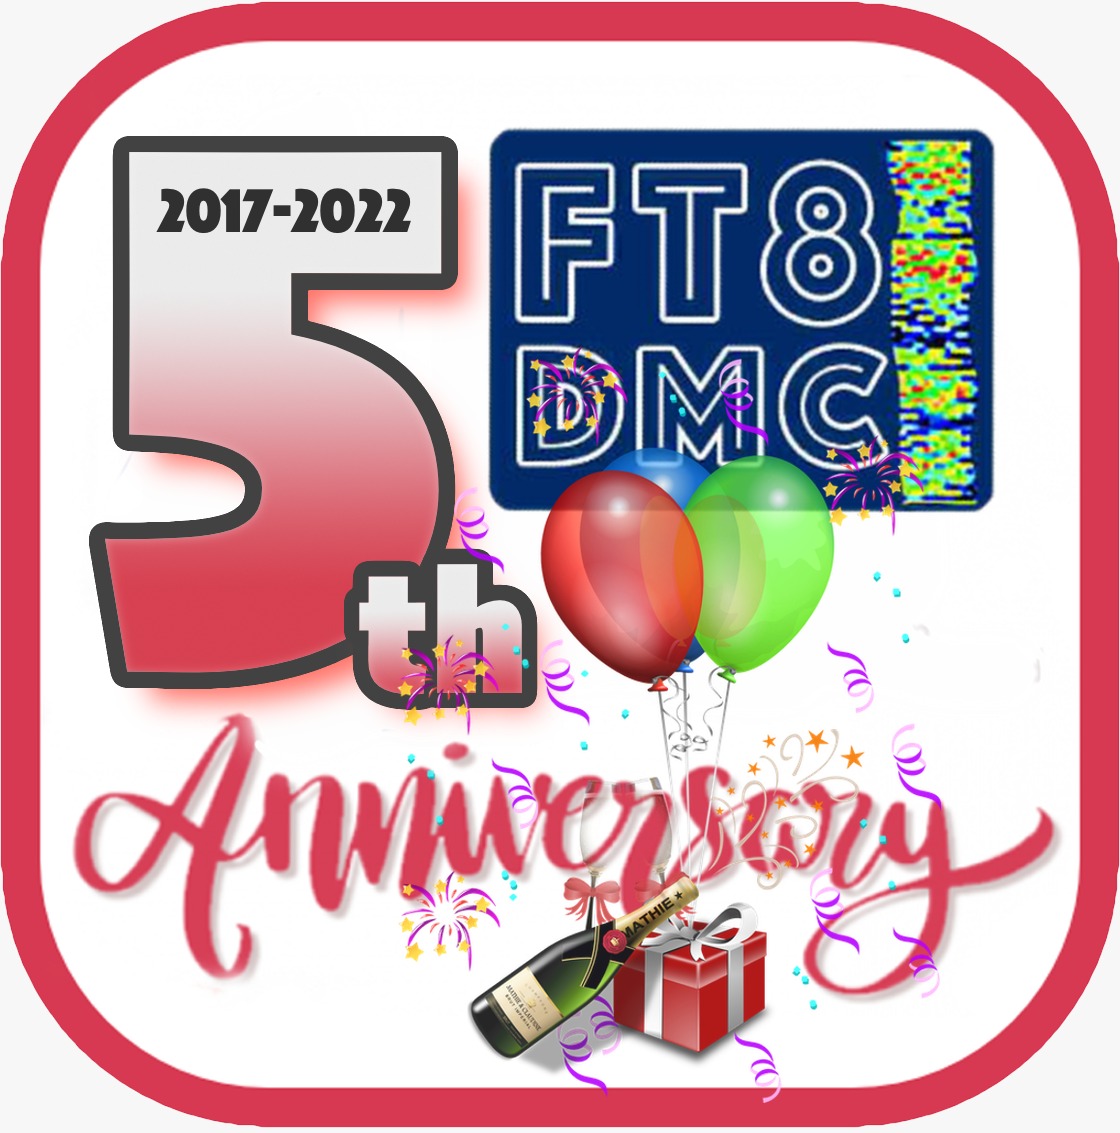 Anniversary 2022 FT8DMC